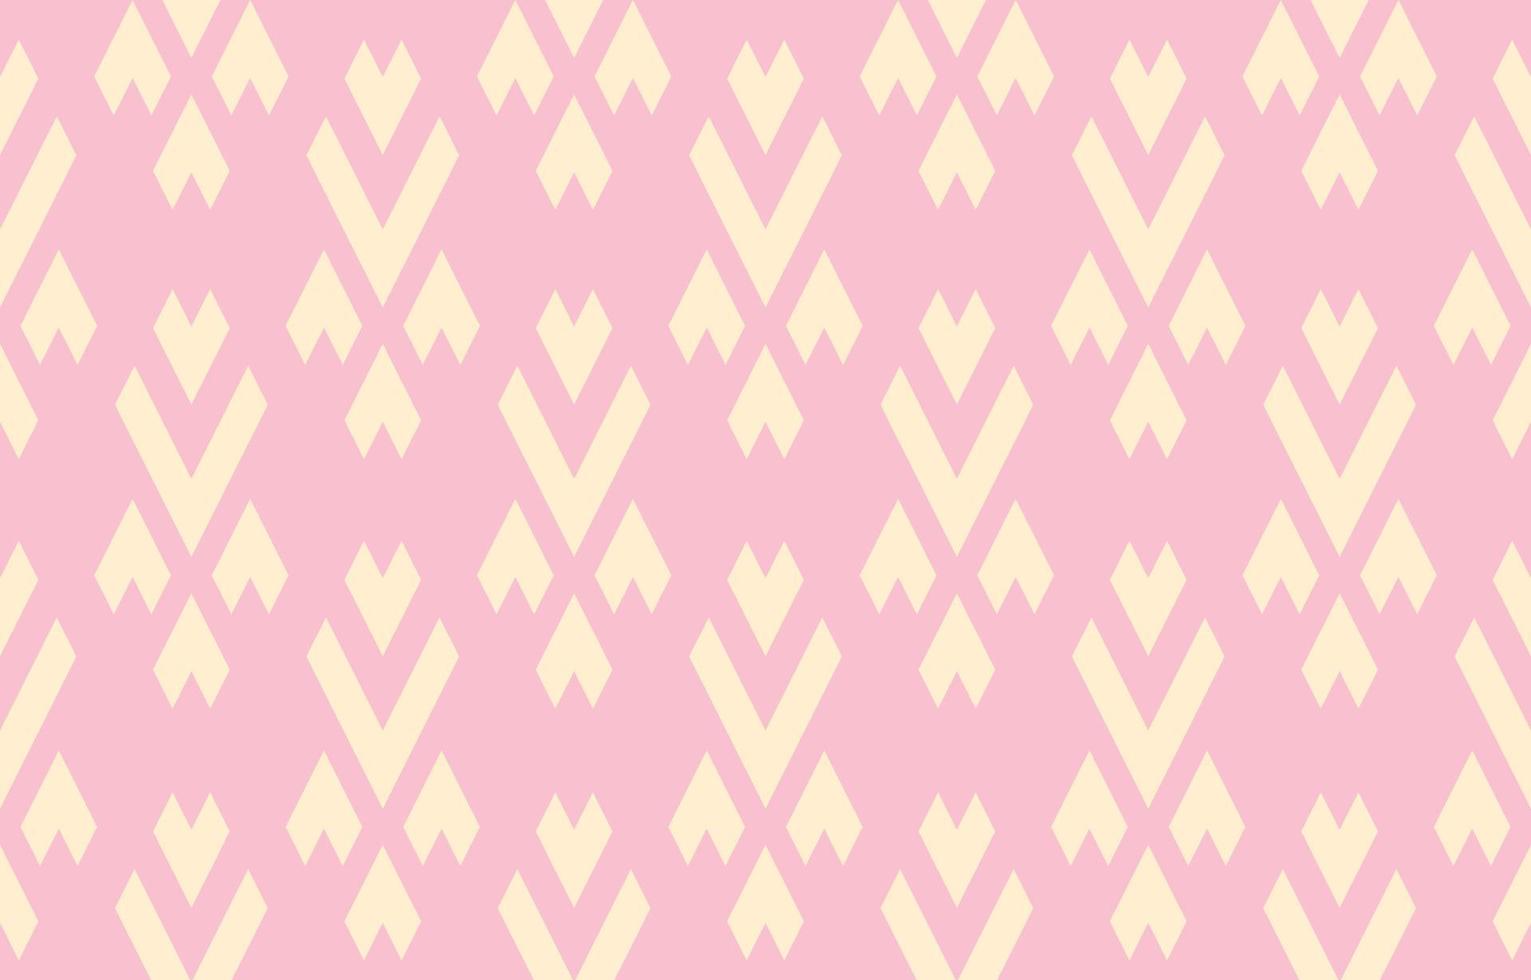 mooie etnische abstracte damastkunst. chevron naadloos roze pastelpatroon in stam, volksborduurwerk, leuke geometrische kunstornamentdruk. ontwerp voor tapijt, behang, kleding, verpakking. vector